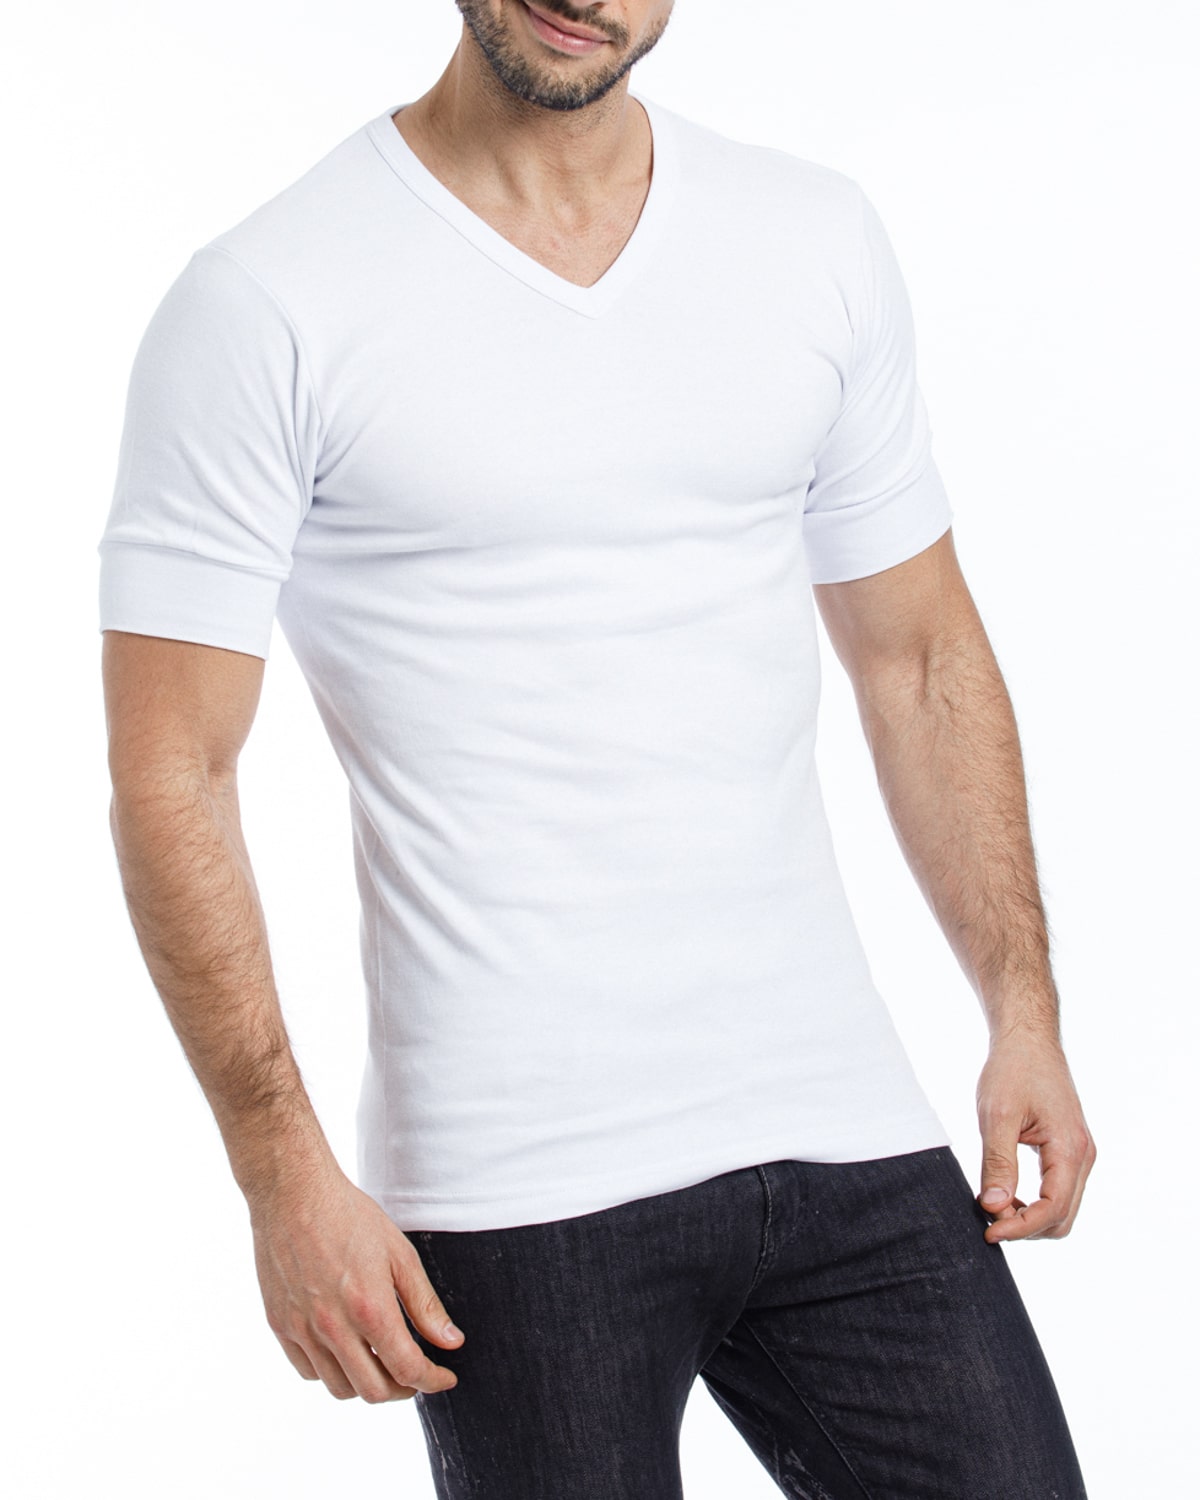 Camiseta Interlock 172 – Eyelit Underwear